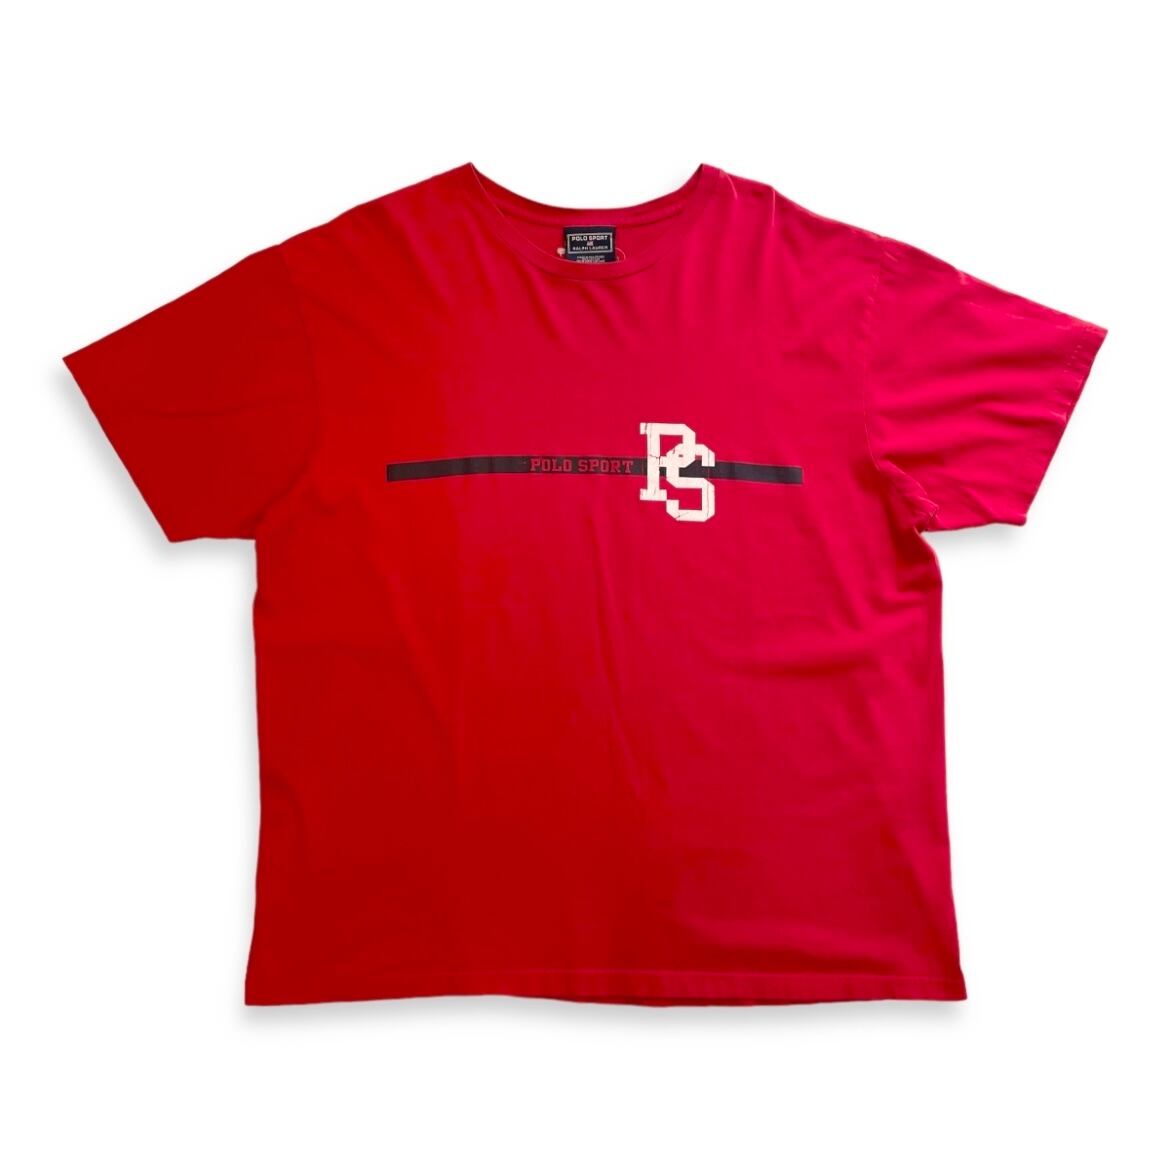 90s POLO SPORT(ポロスポーツ) S/S T-Shirt 半袖Tシャツ / XL